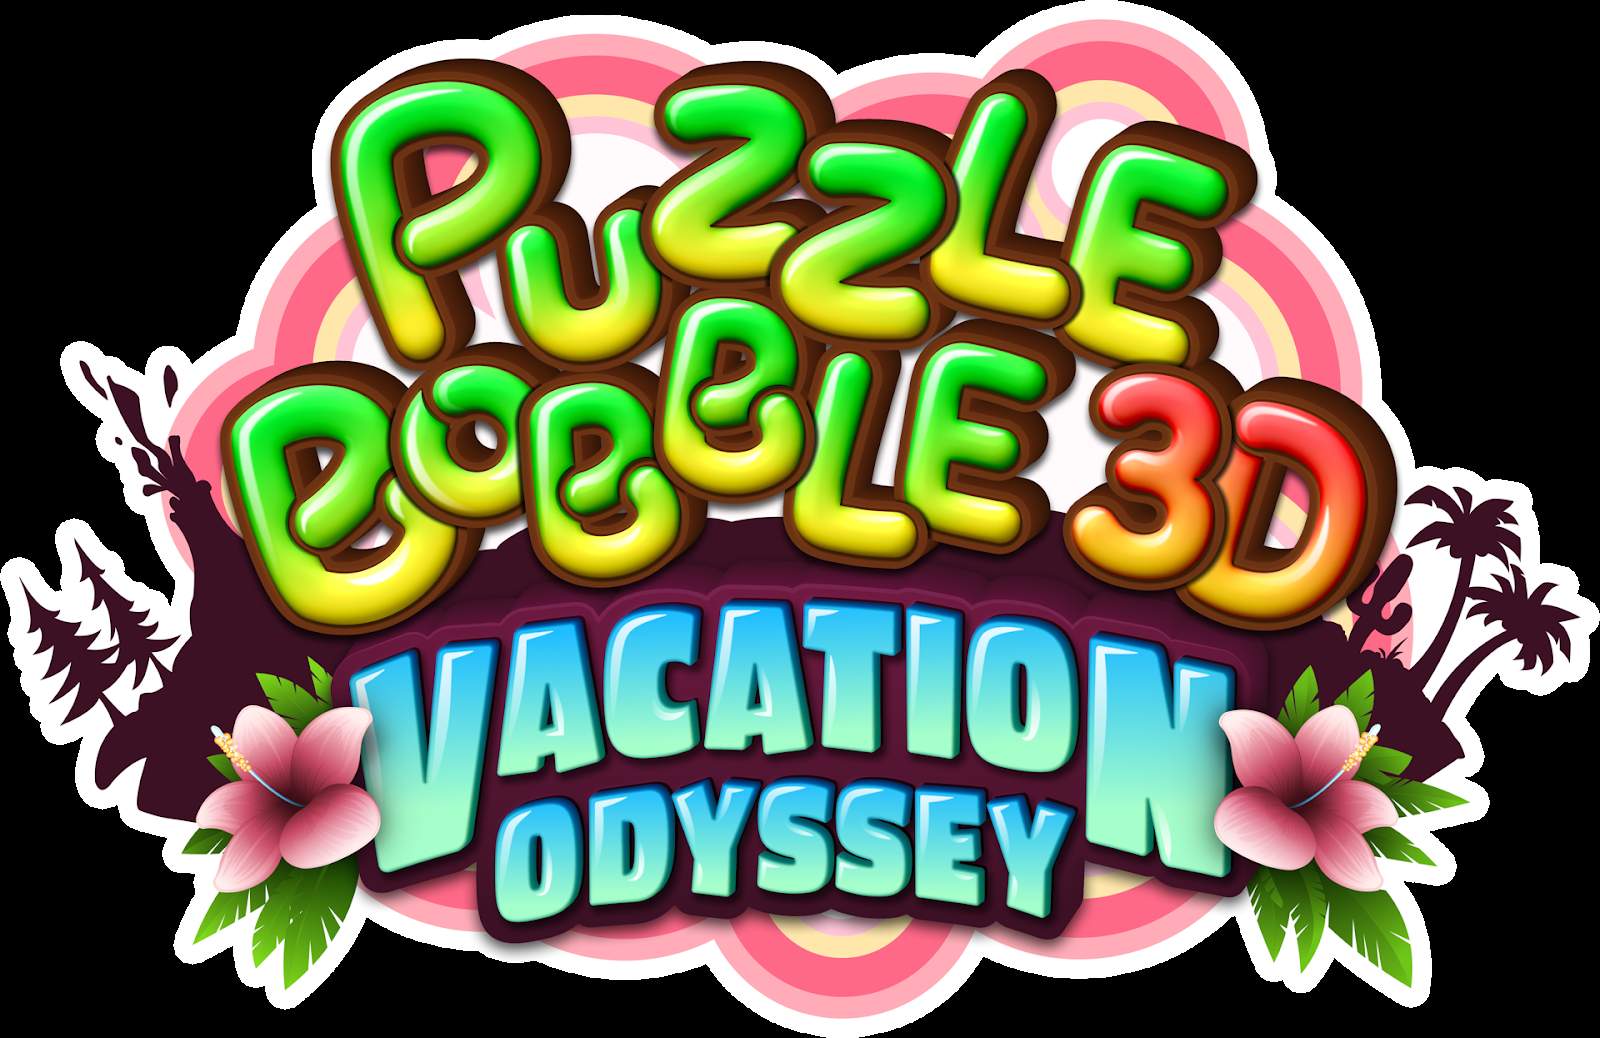 Taito Puzzle Bobble 3D: Vacation Odyssey conto alla rovescia per il preordine